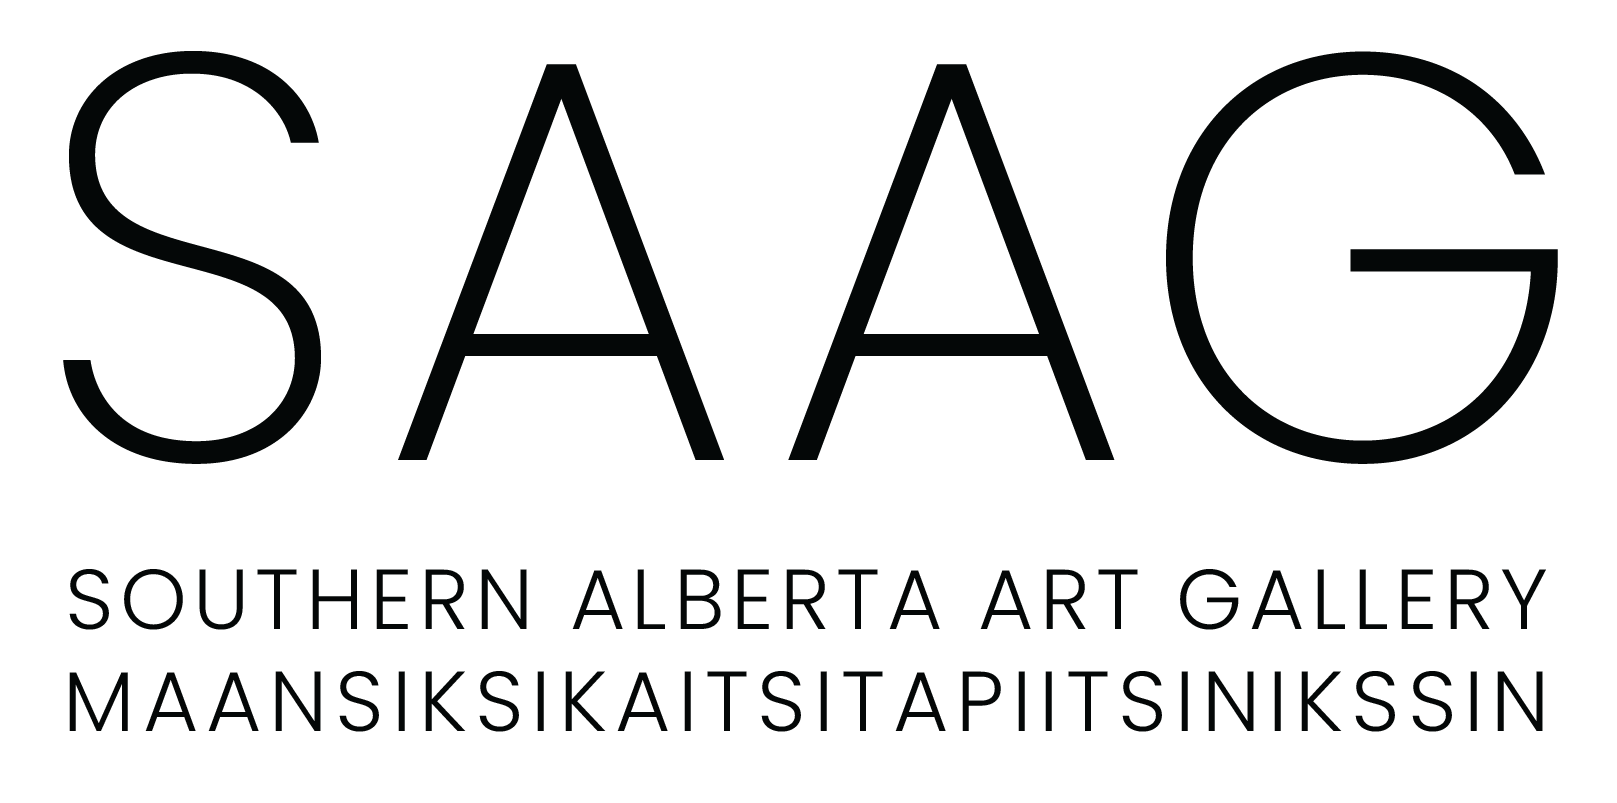 Southern Alberta Art Gallery (SAAG) Maansiksikaitsitapiitsinikssin